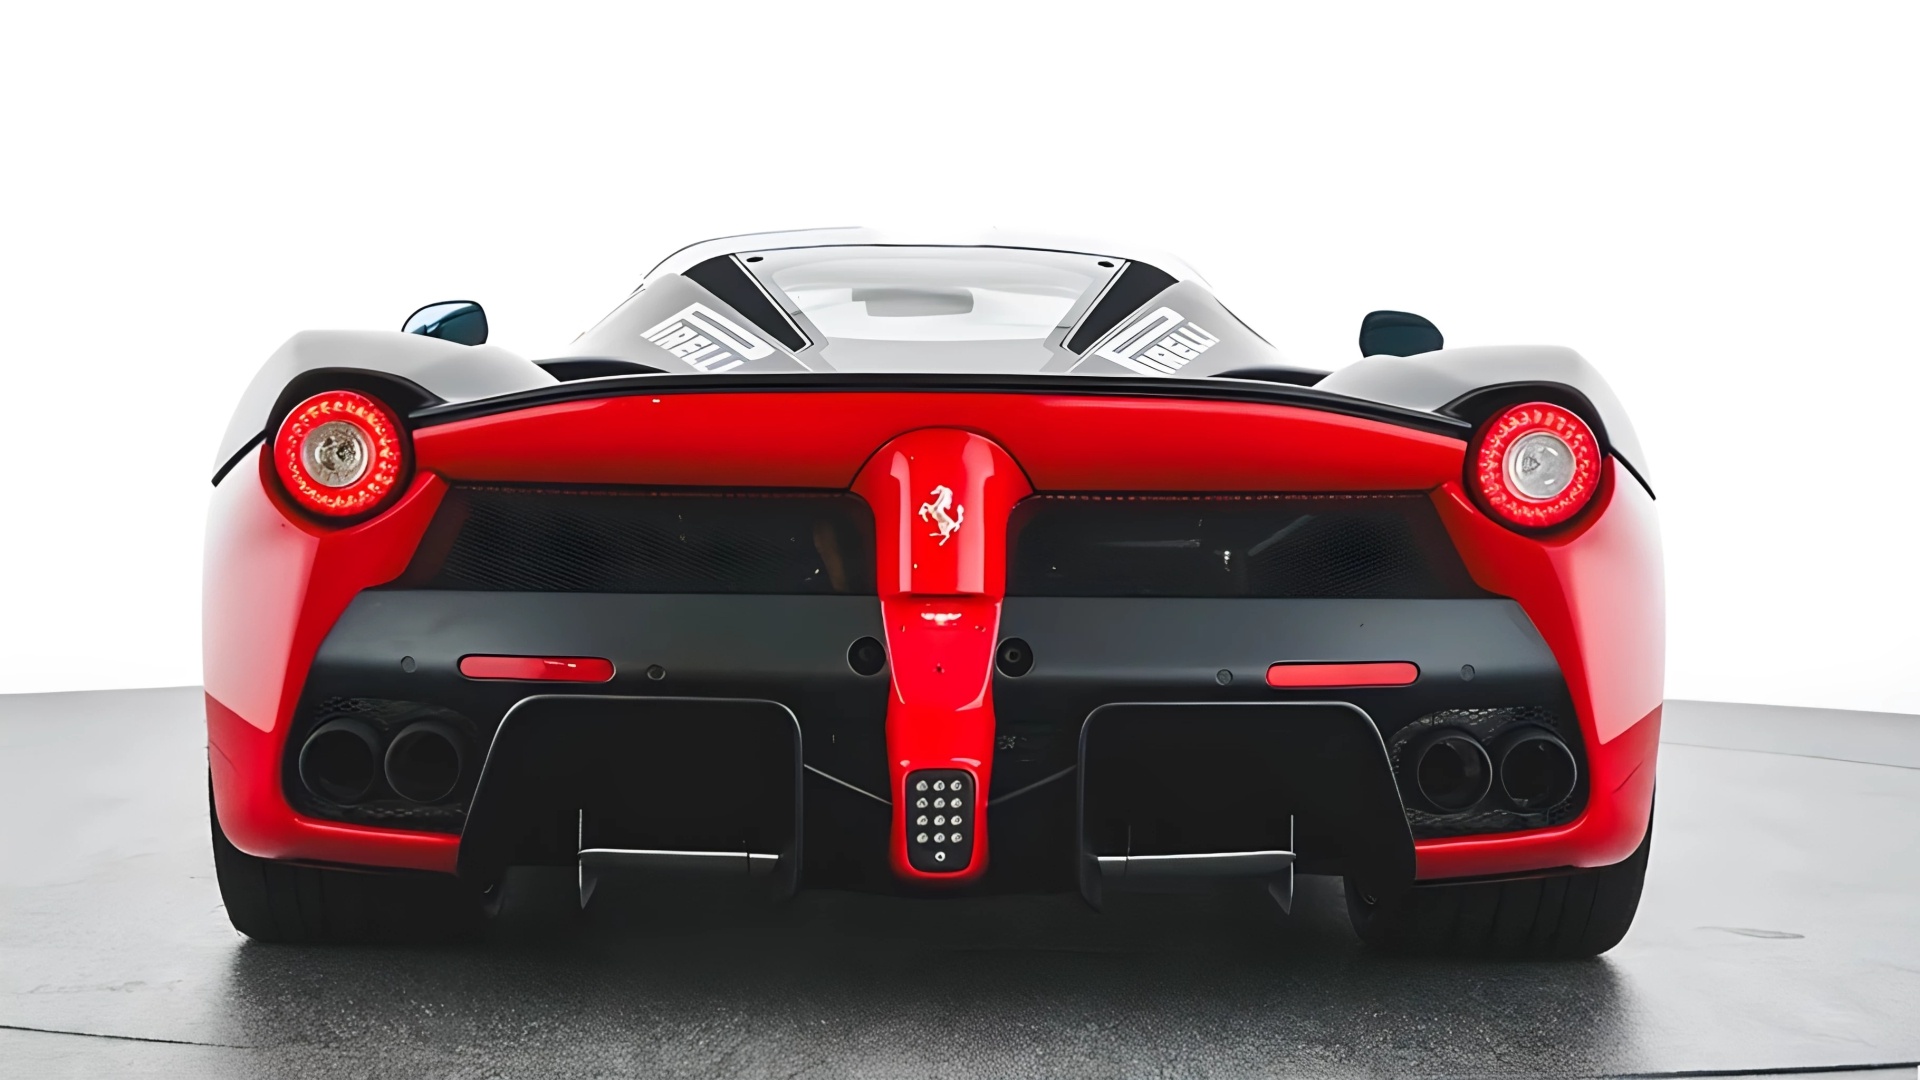 The Rear Profile Of The 2014 Ferrari La Ferrari Prototype (Credits SBX)